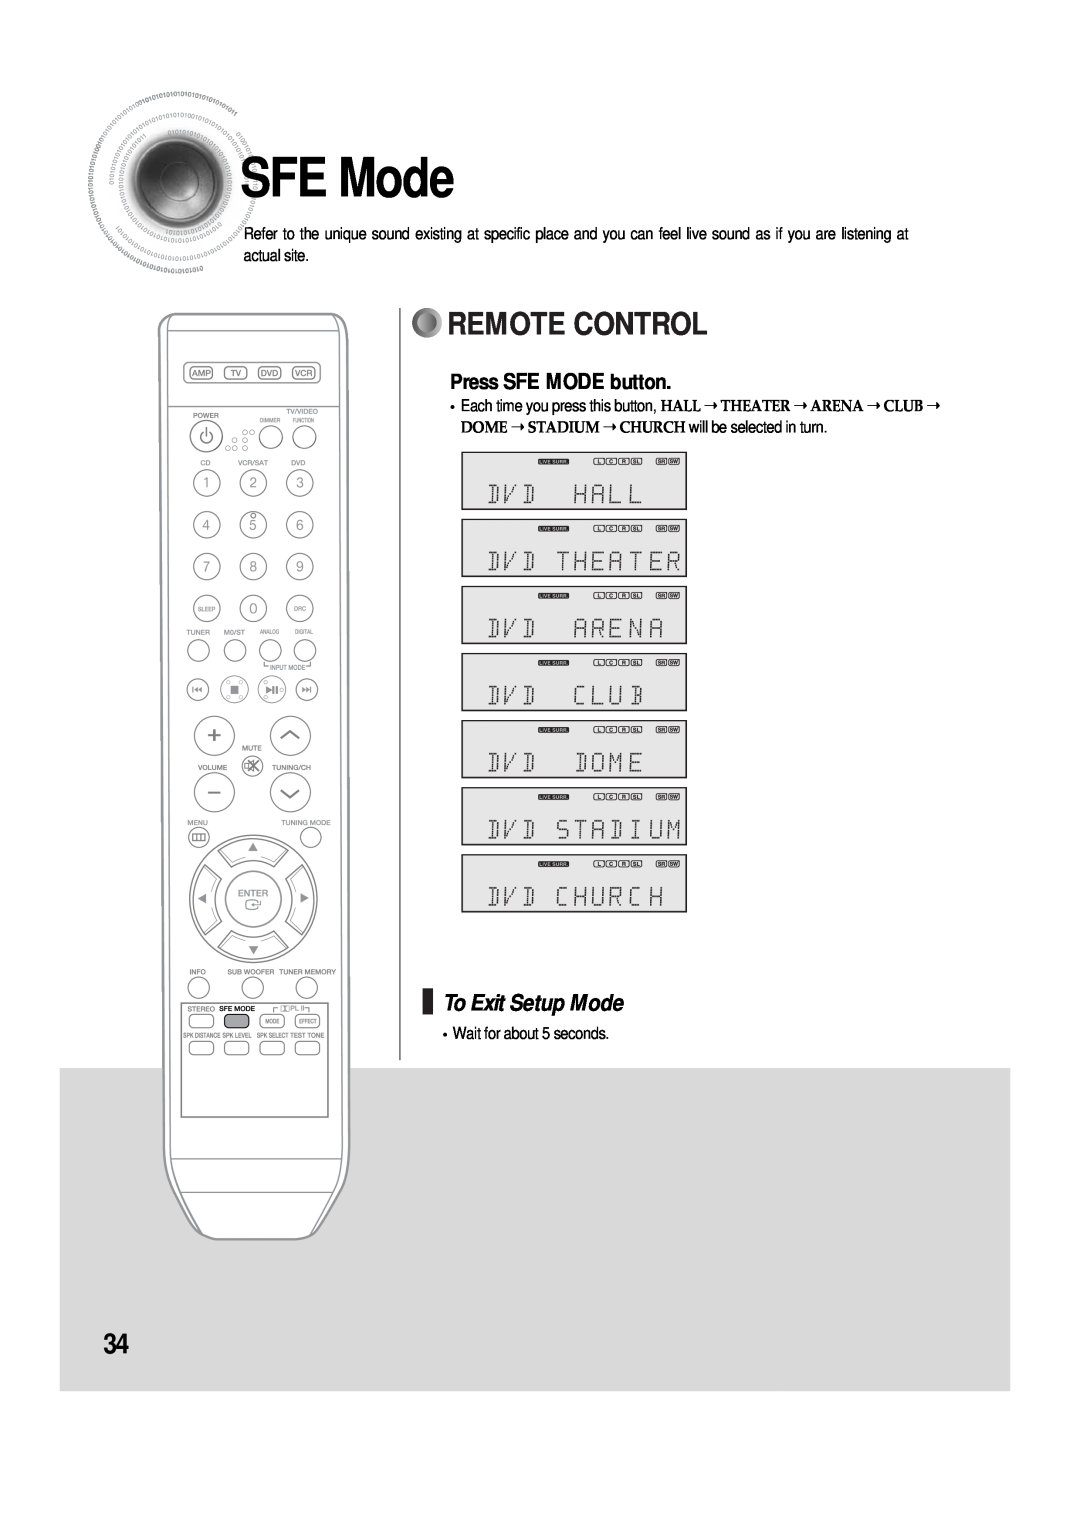 Samsung AV-R610, 20060510083254531, AH68-01853S manual SFEMode, Remote Control, To Exit Setup Mode, Press SFE MODE button 